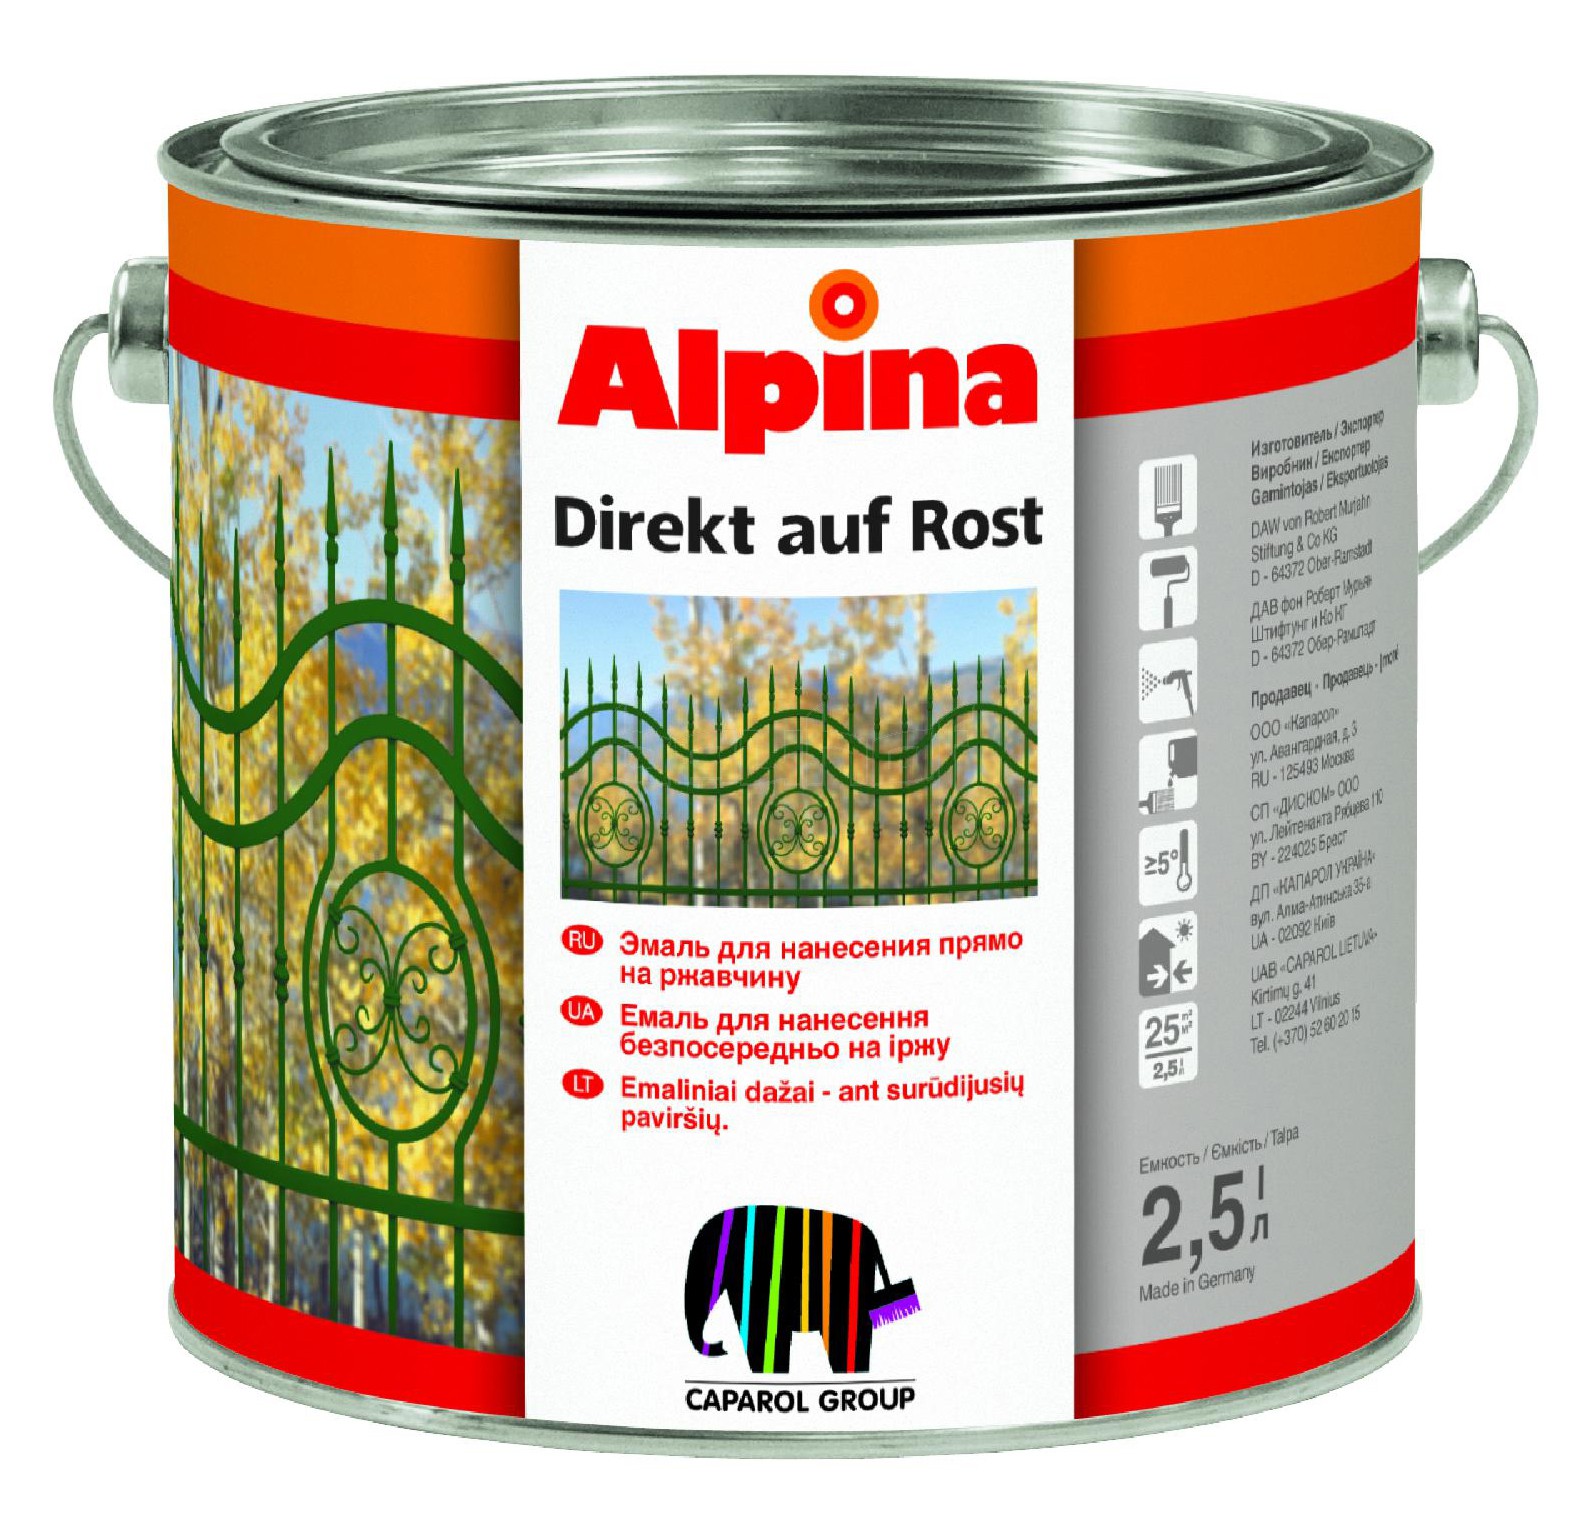 Alpina Direkt Auf Rost 2.5 л, Грунт-эмаль алкидная по ржавчине (синяя)